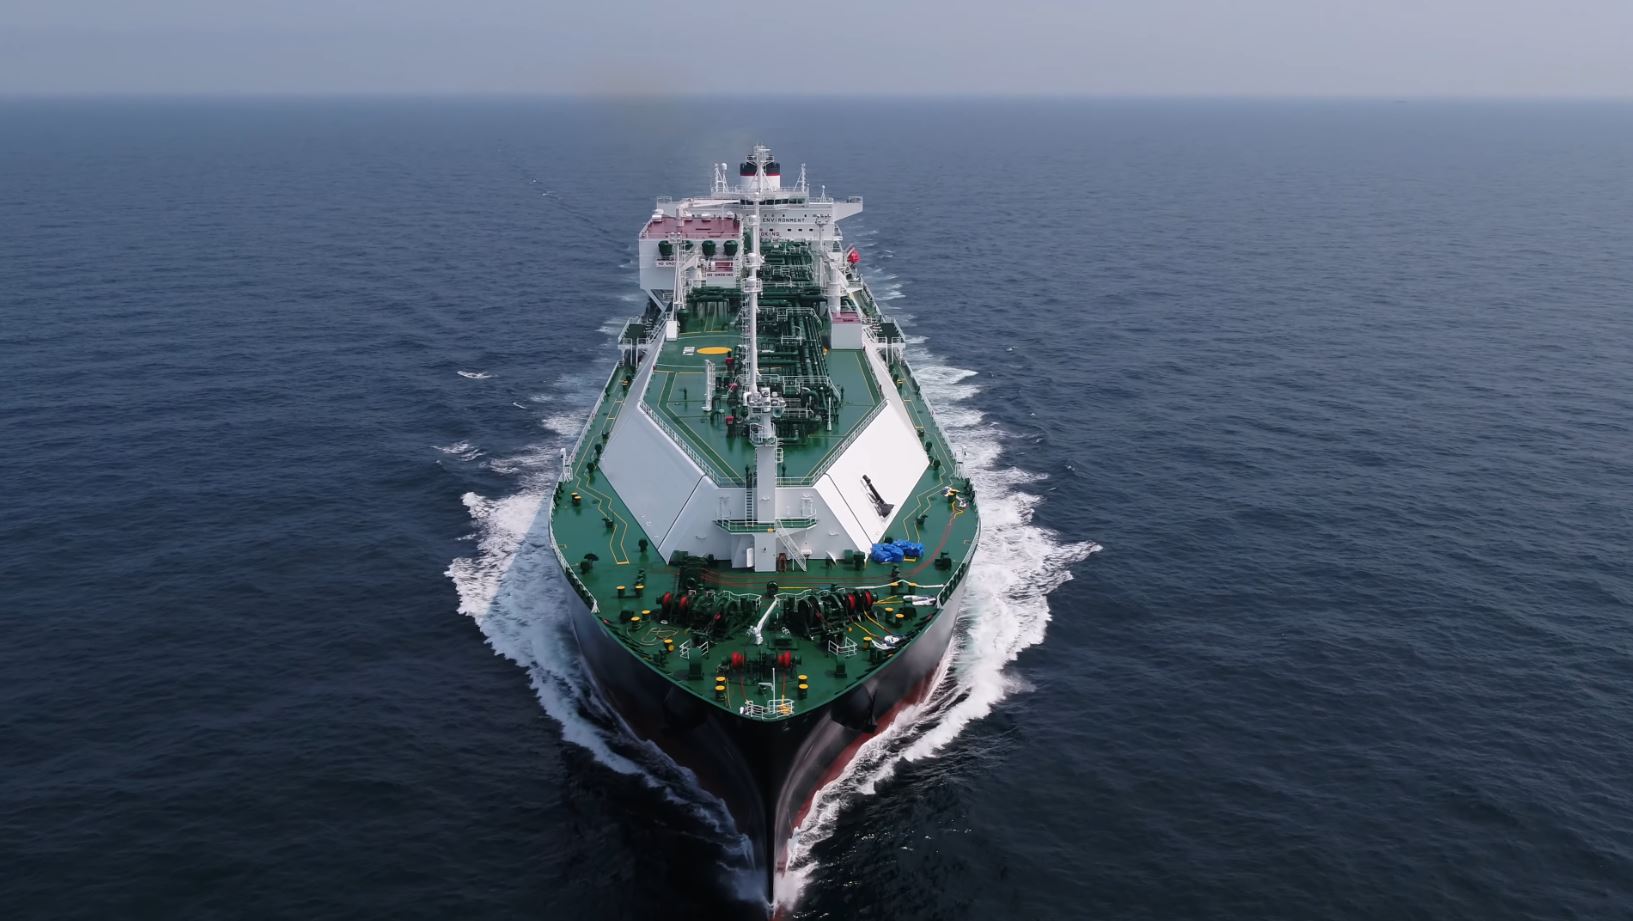 Third LNG carrier joins Alpha Gas fleet